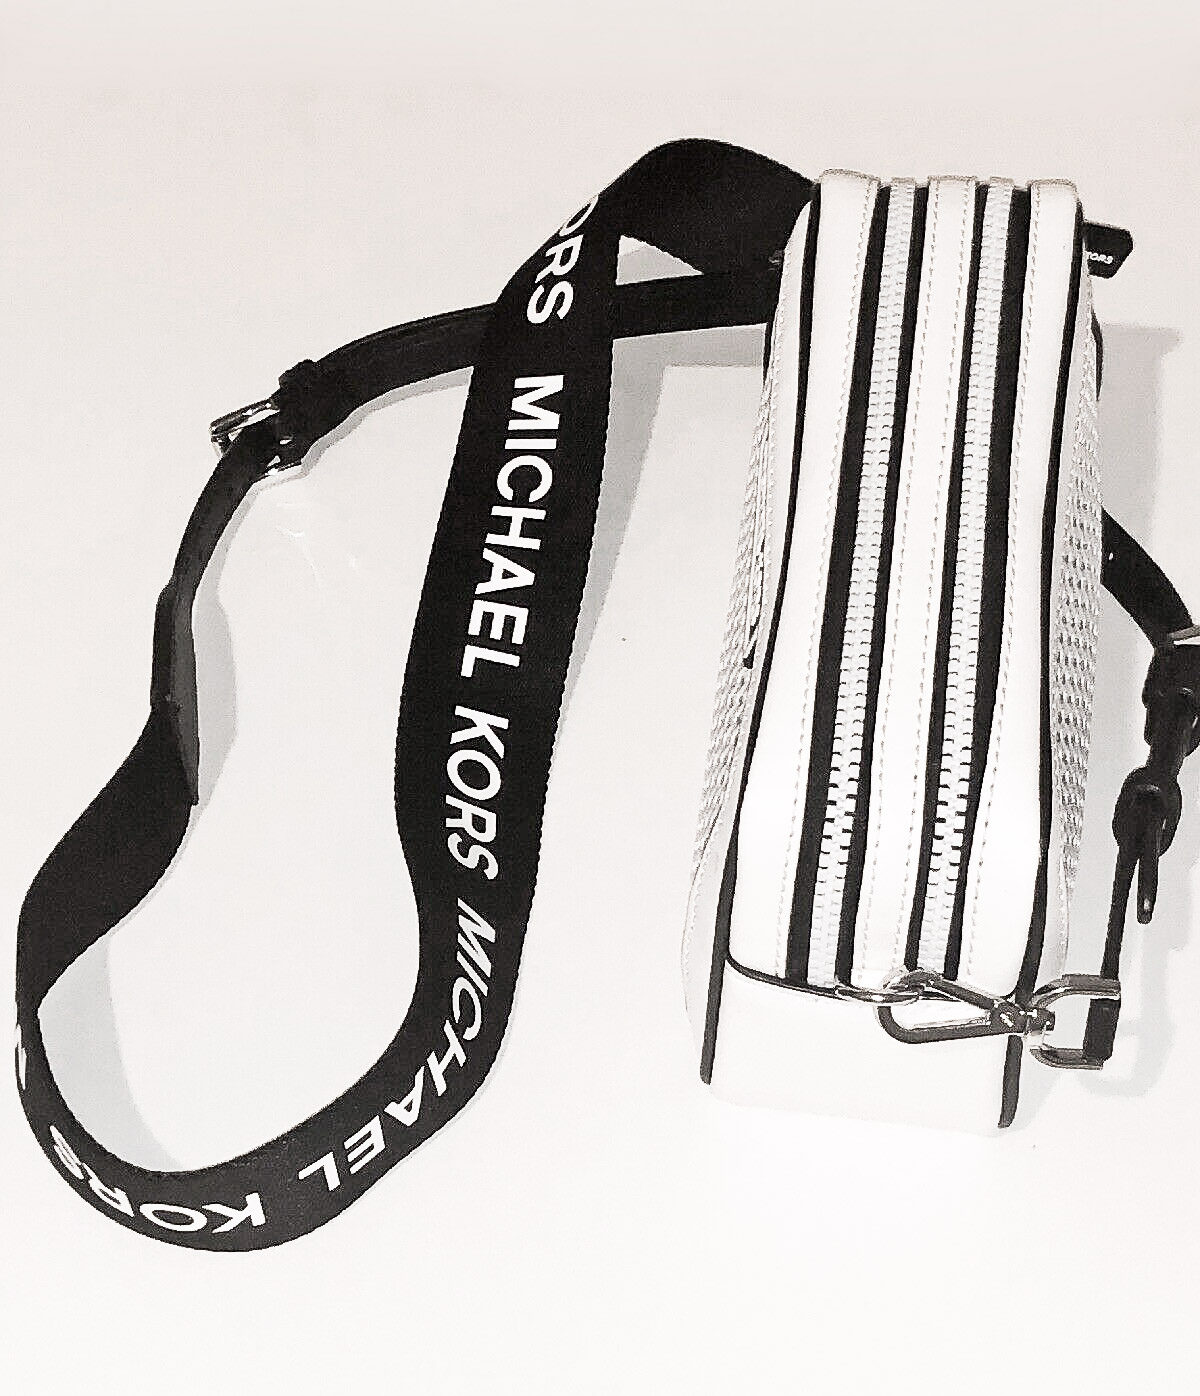 michael kors bag black and white